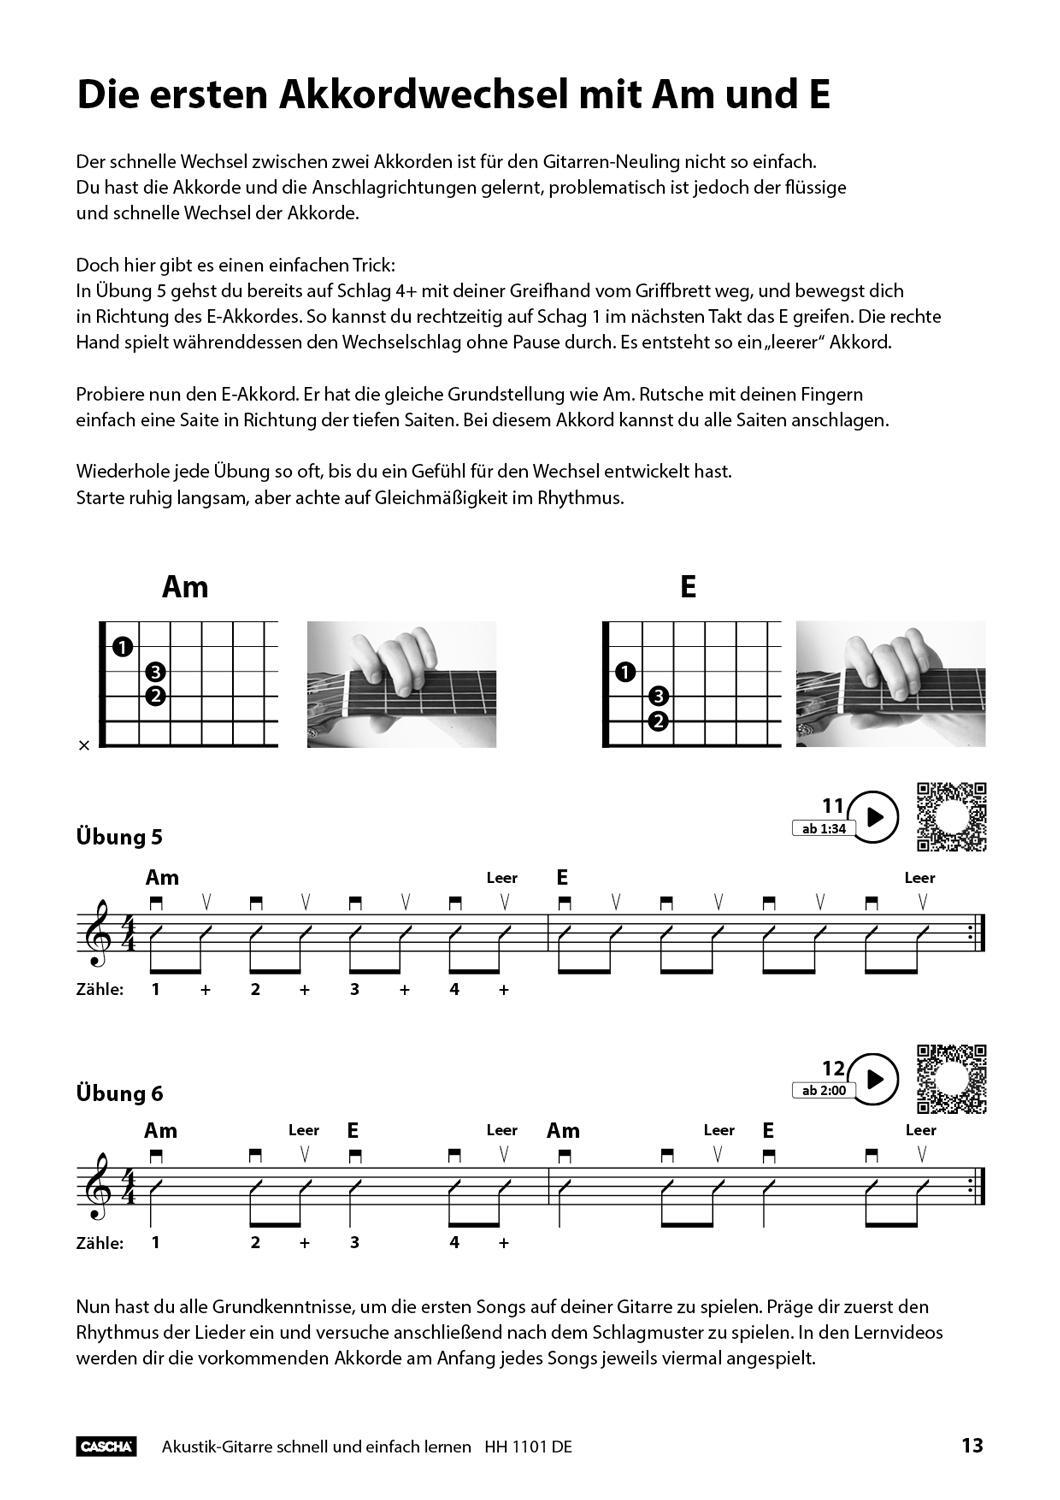 Bild: 4026929916501 | Akustik-Gitarre - Schnell und einfach lernen | Broschüre | Geheftet